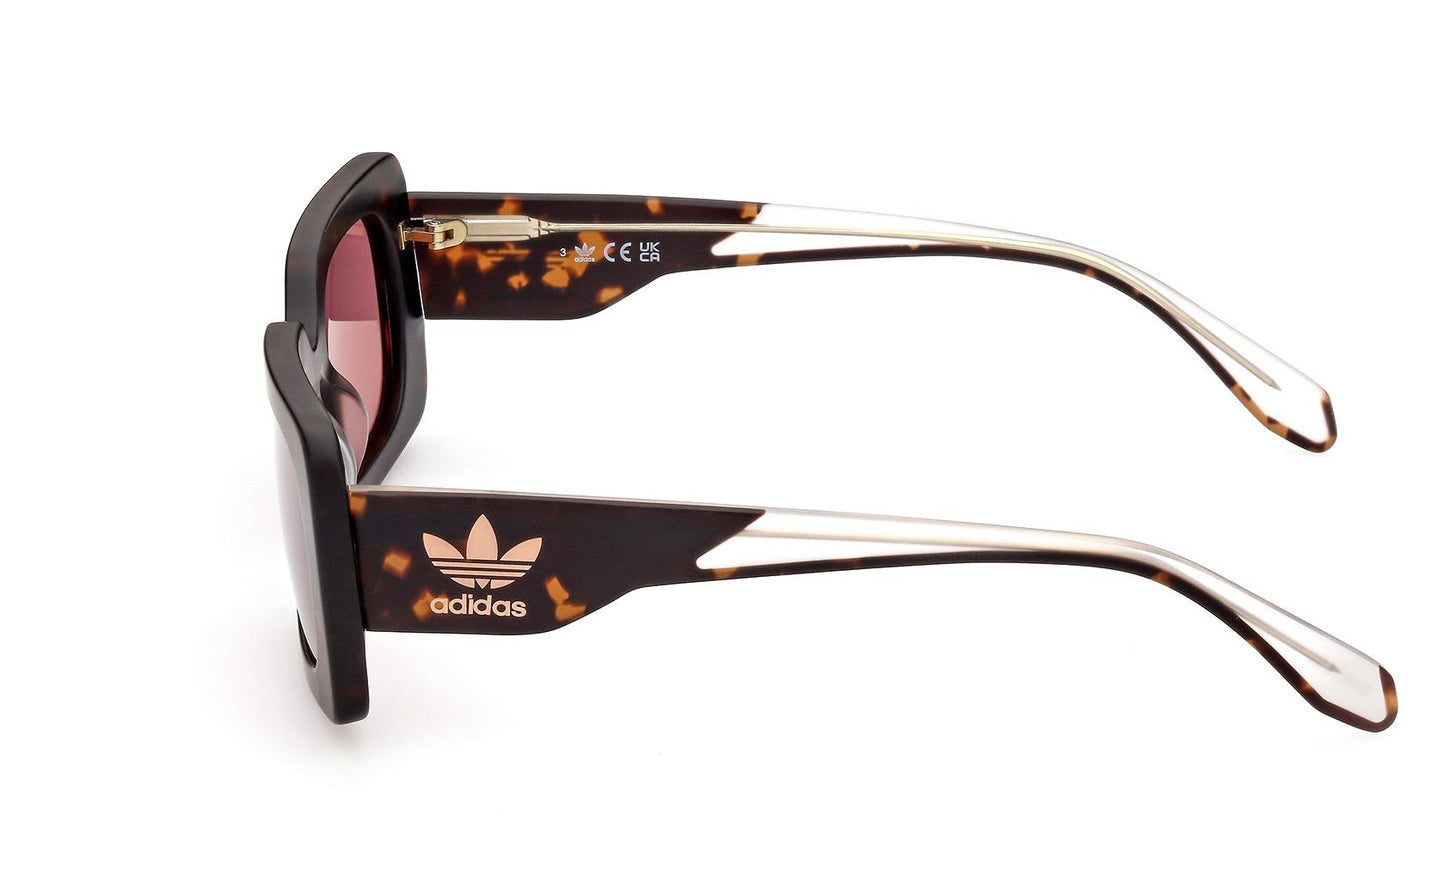 Adidas Originals Sunglasses OR0076 52S